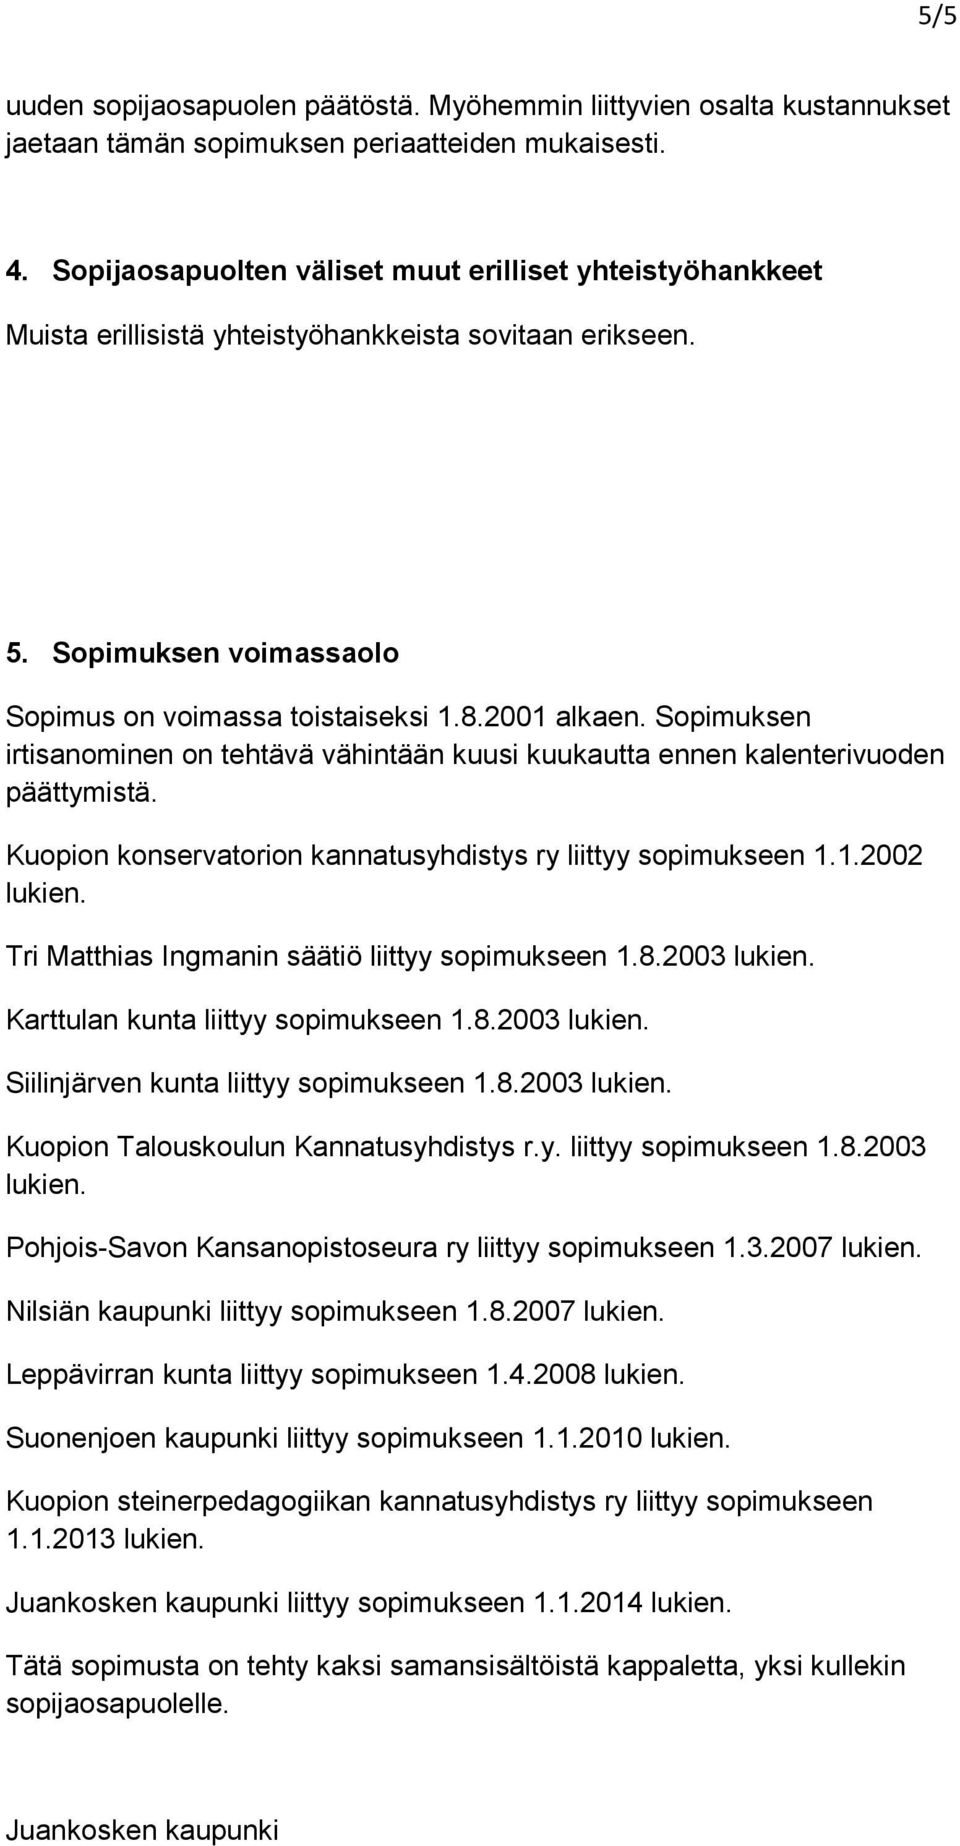 Sopimuksen irtisanominen on tehtävä vähintään kuusi kuukautta ennen kalenterivuoden päättymistä. Kuopion konservatorion kannatusyhdistys ry liittyy sopimukseen 1.1.2002 lukien.